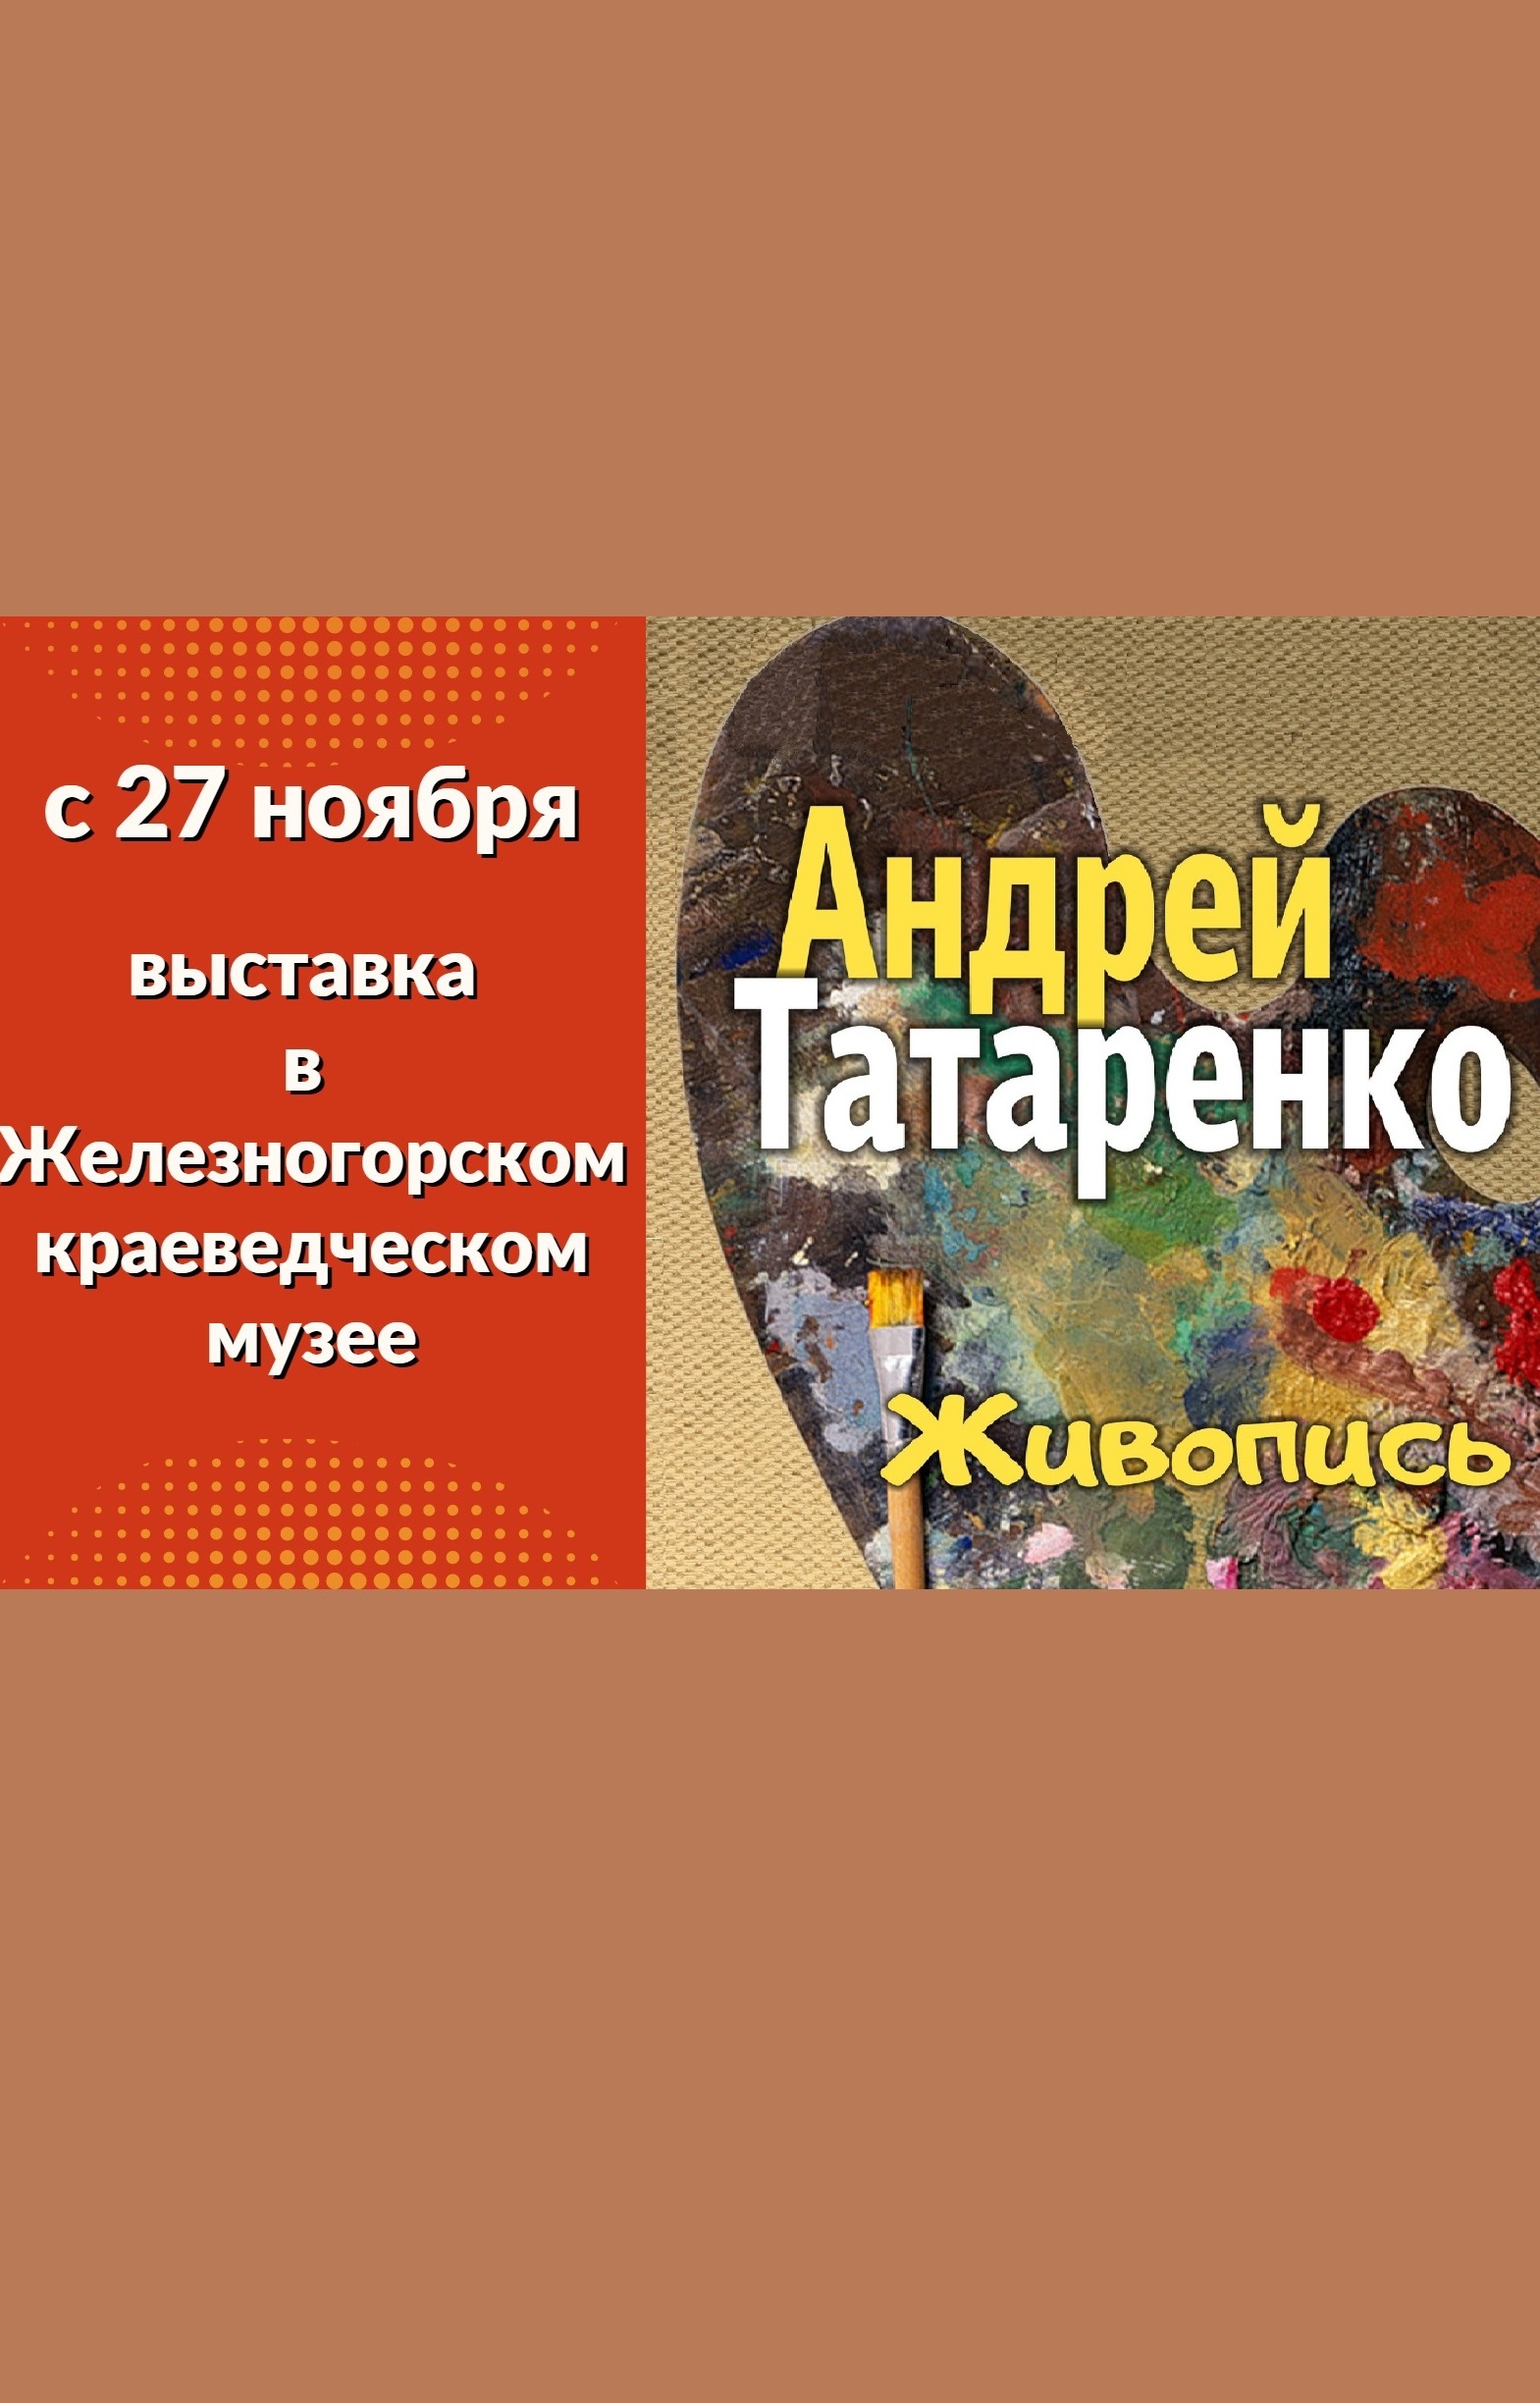 Персональная выставка живописных работ Андрея Татаренко